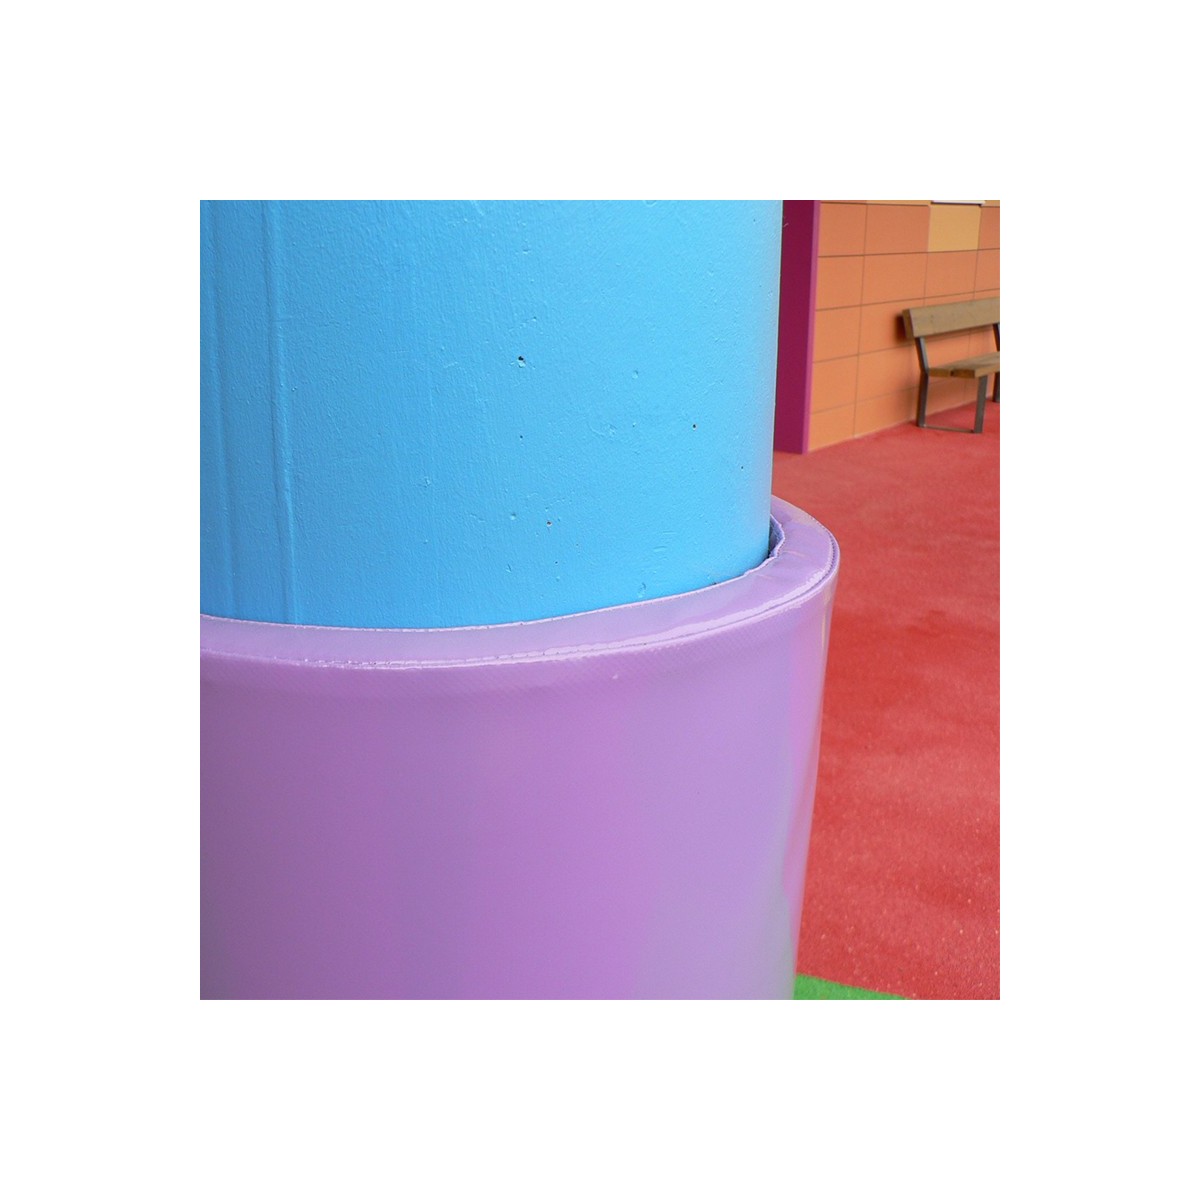 Protection de poteau cylindrique - 3 - Protections de poteau cylindrique, colonne en mousse anti-choc, adapté pour les écoles, c